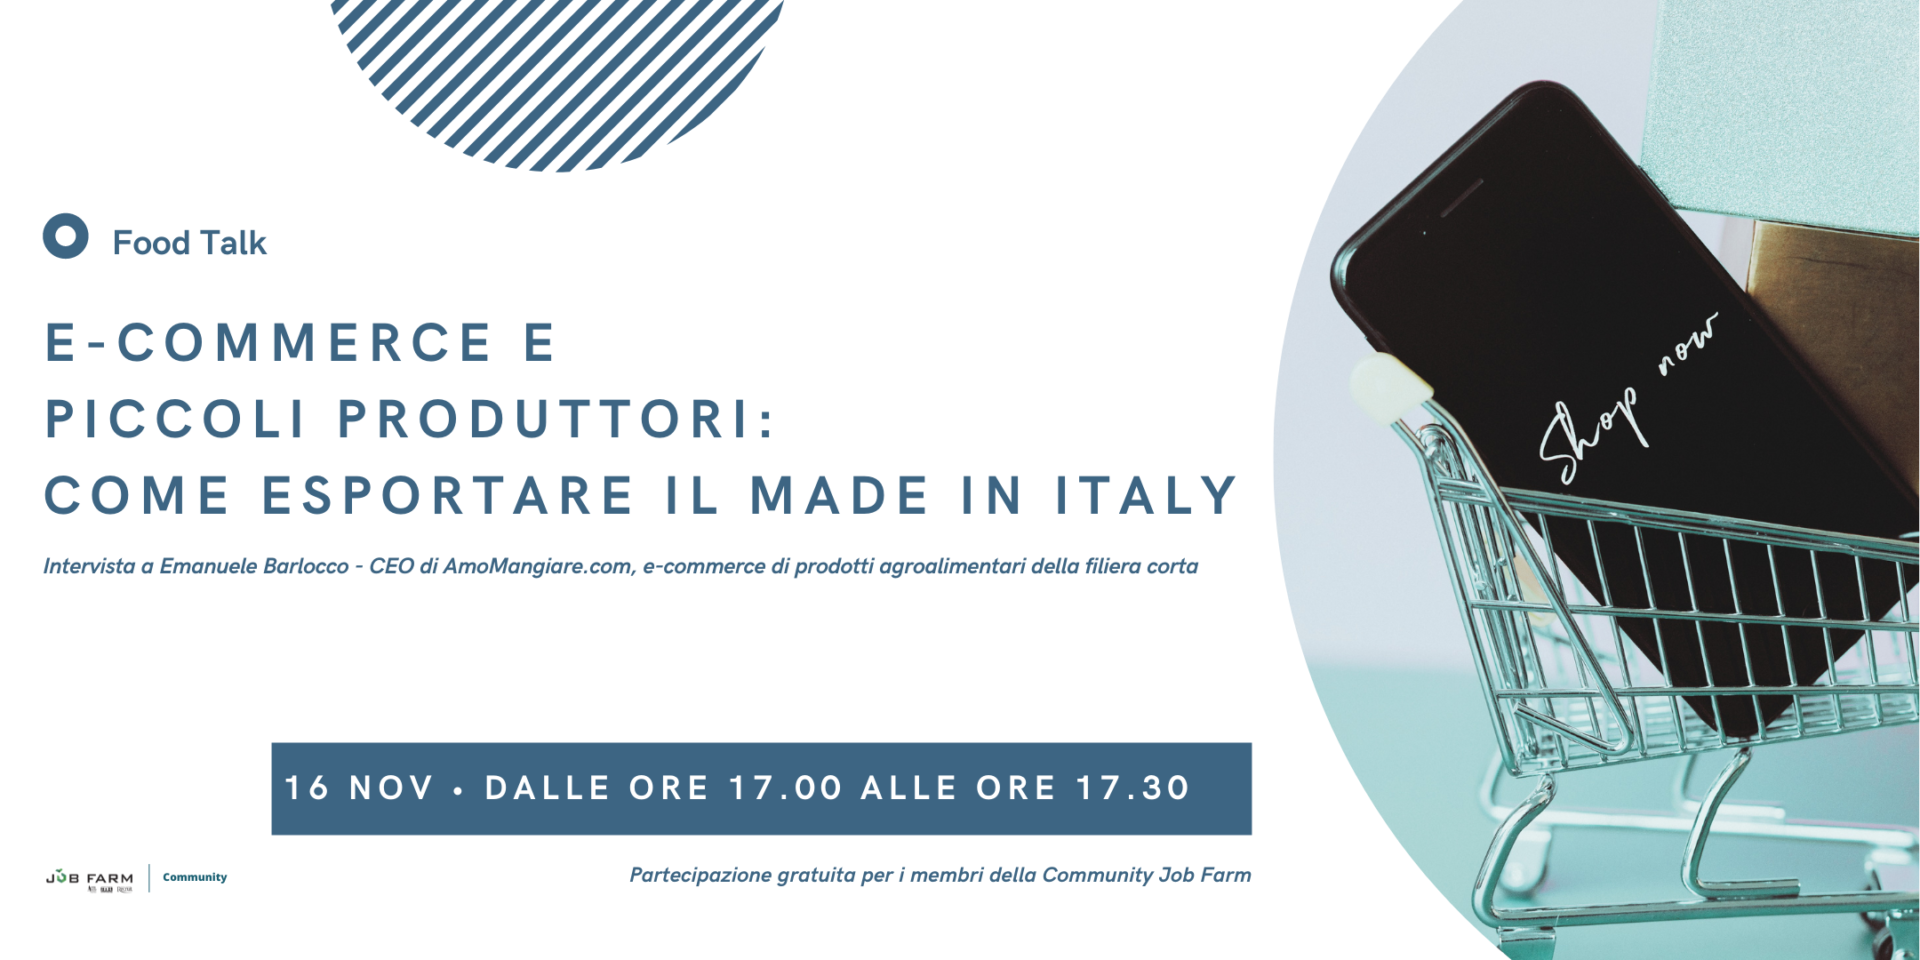 E-commerce e piccoli produttori: come esportare il made in Italy.